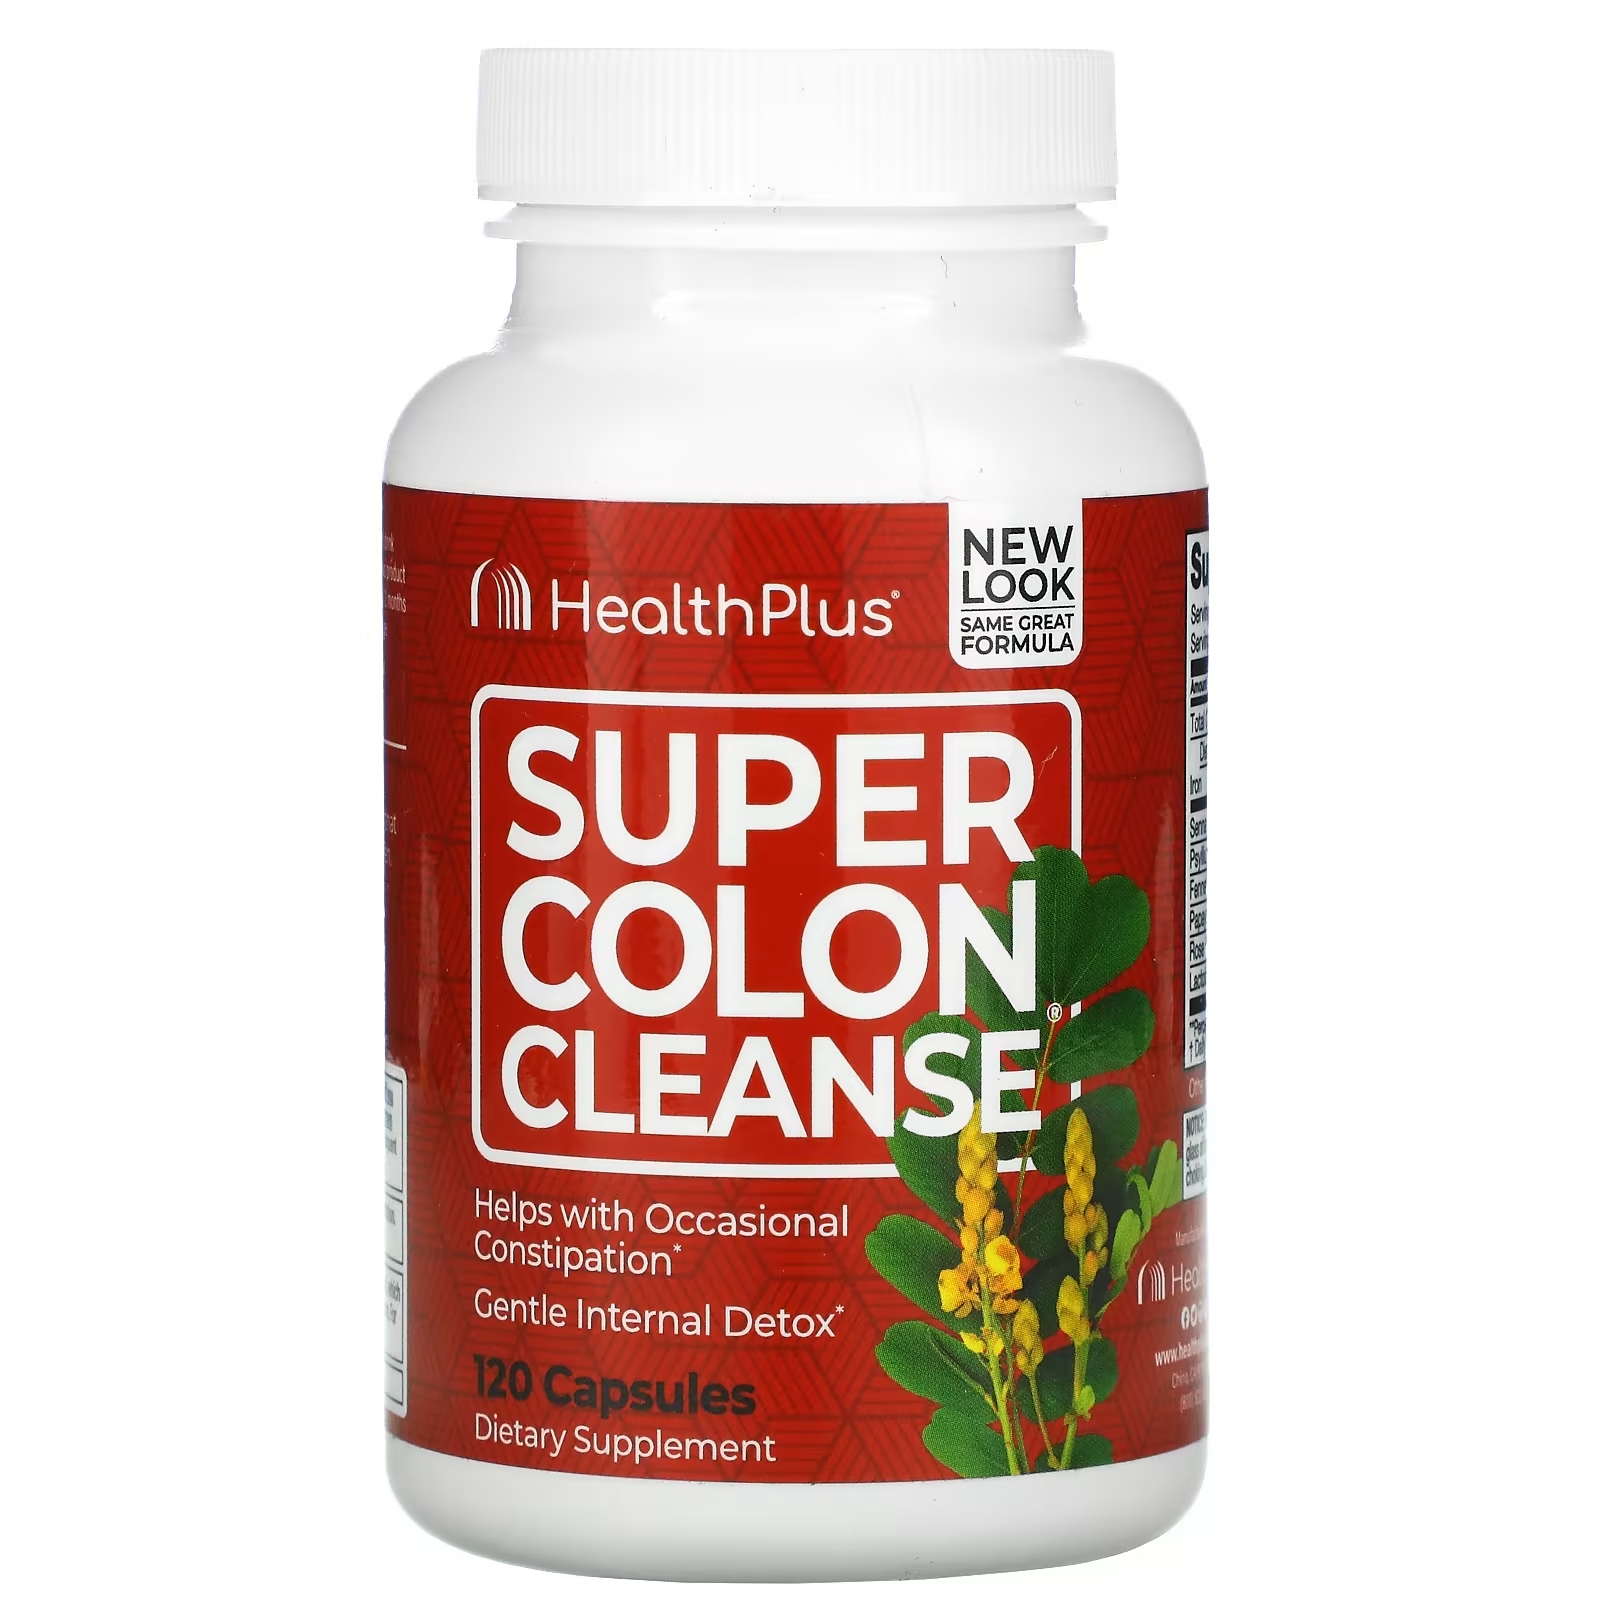 Health Plus Super Colon Cleanse, 120 капсул цена и фото